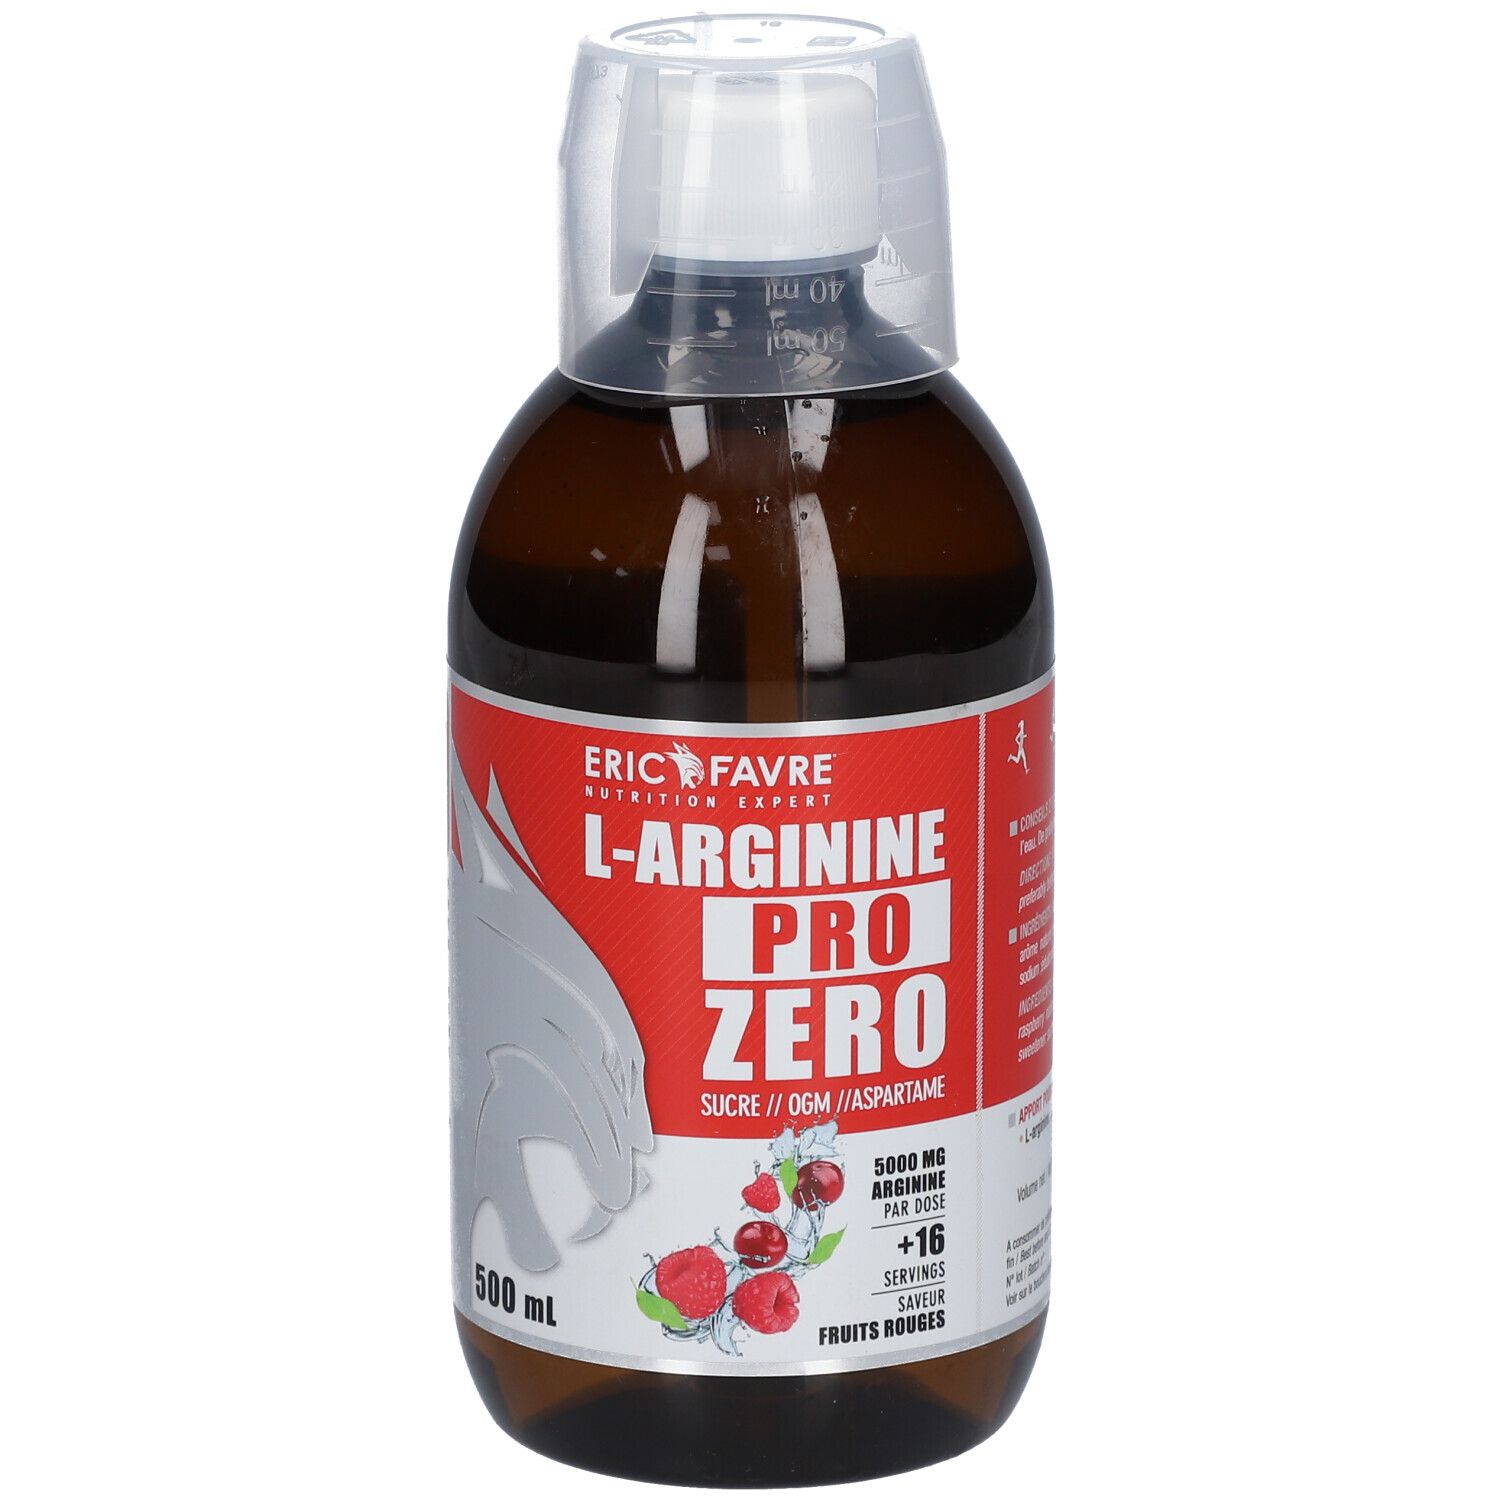 Eric Favre L-Arginine Pro Zero Saveur fruits rouges